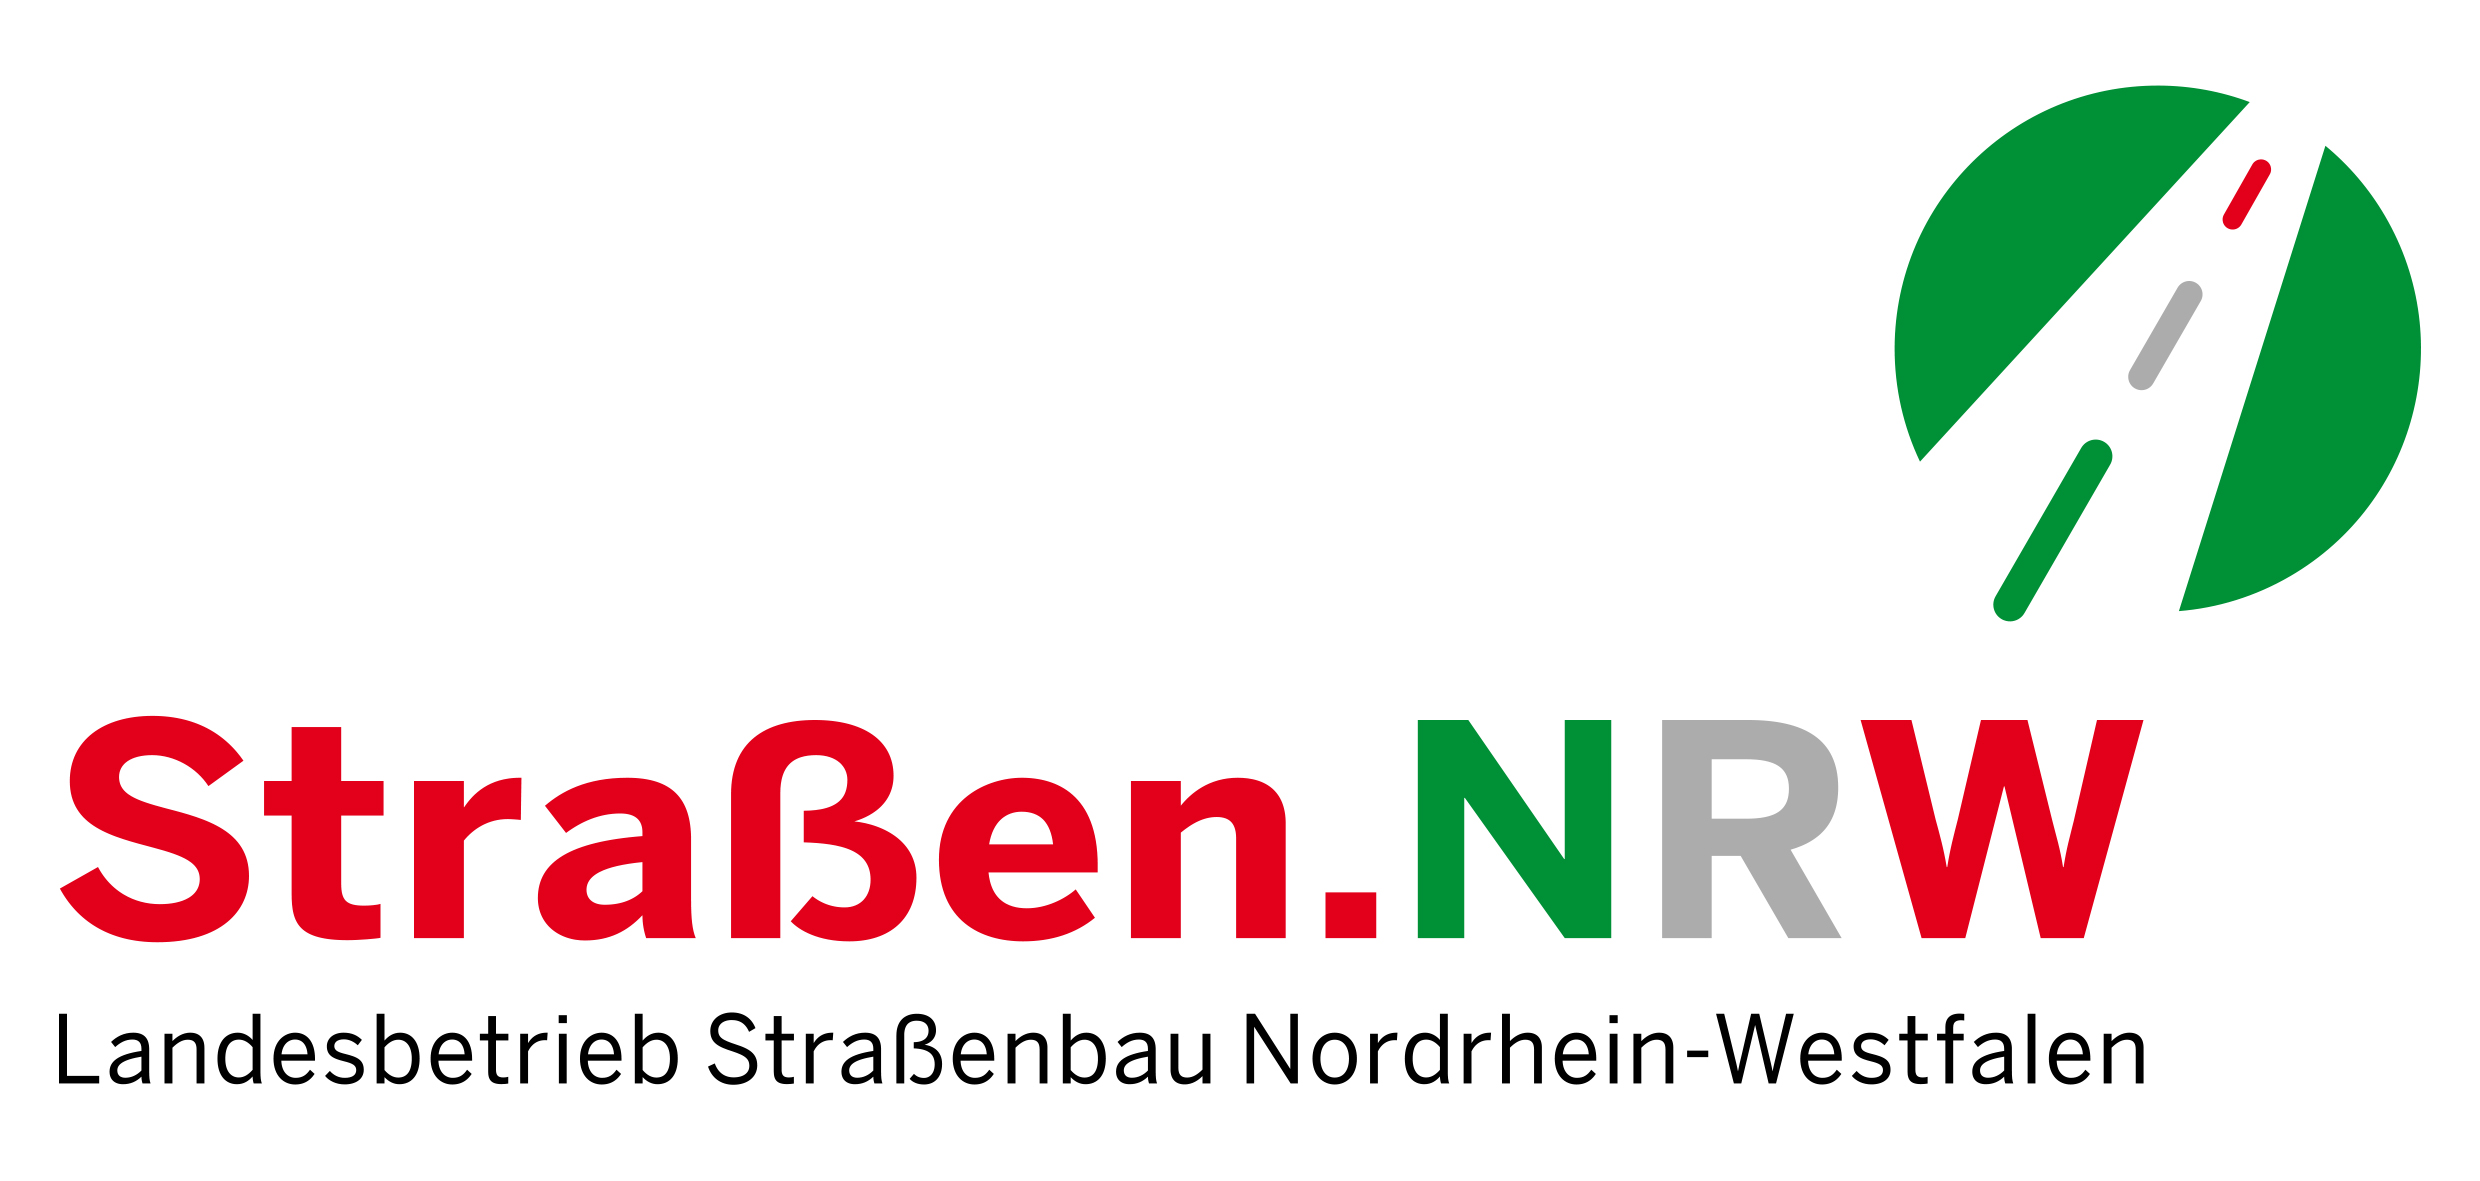 strassen_nrw_logo_rgb